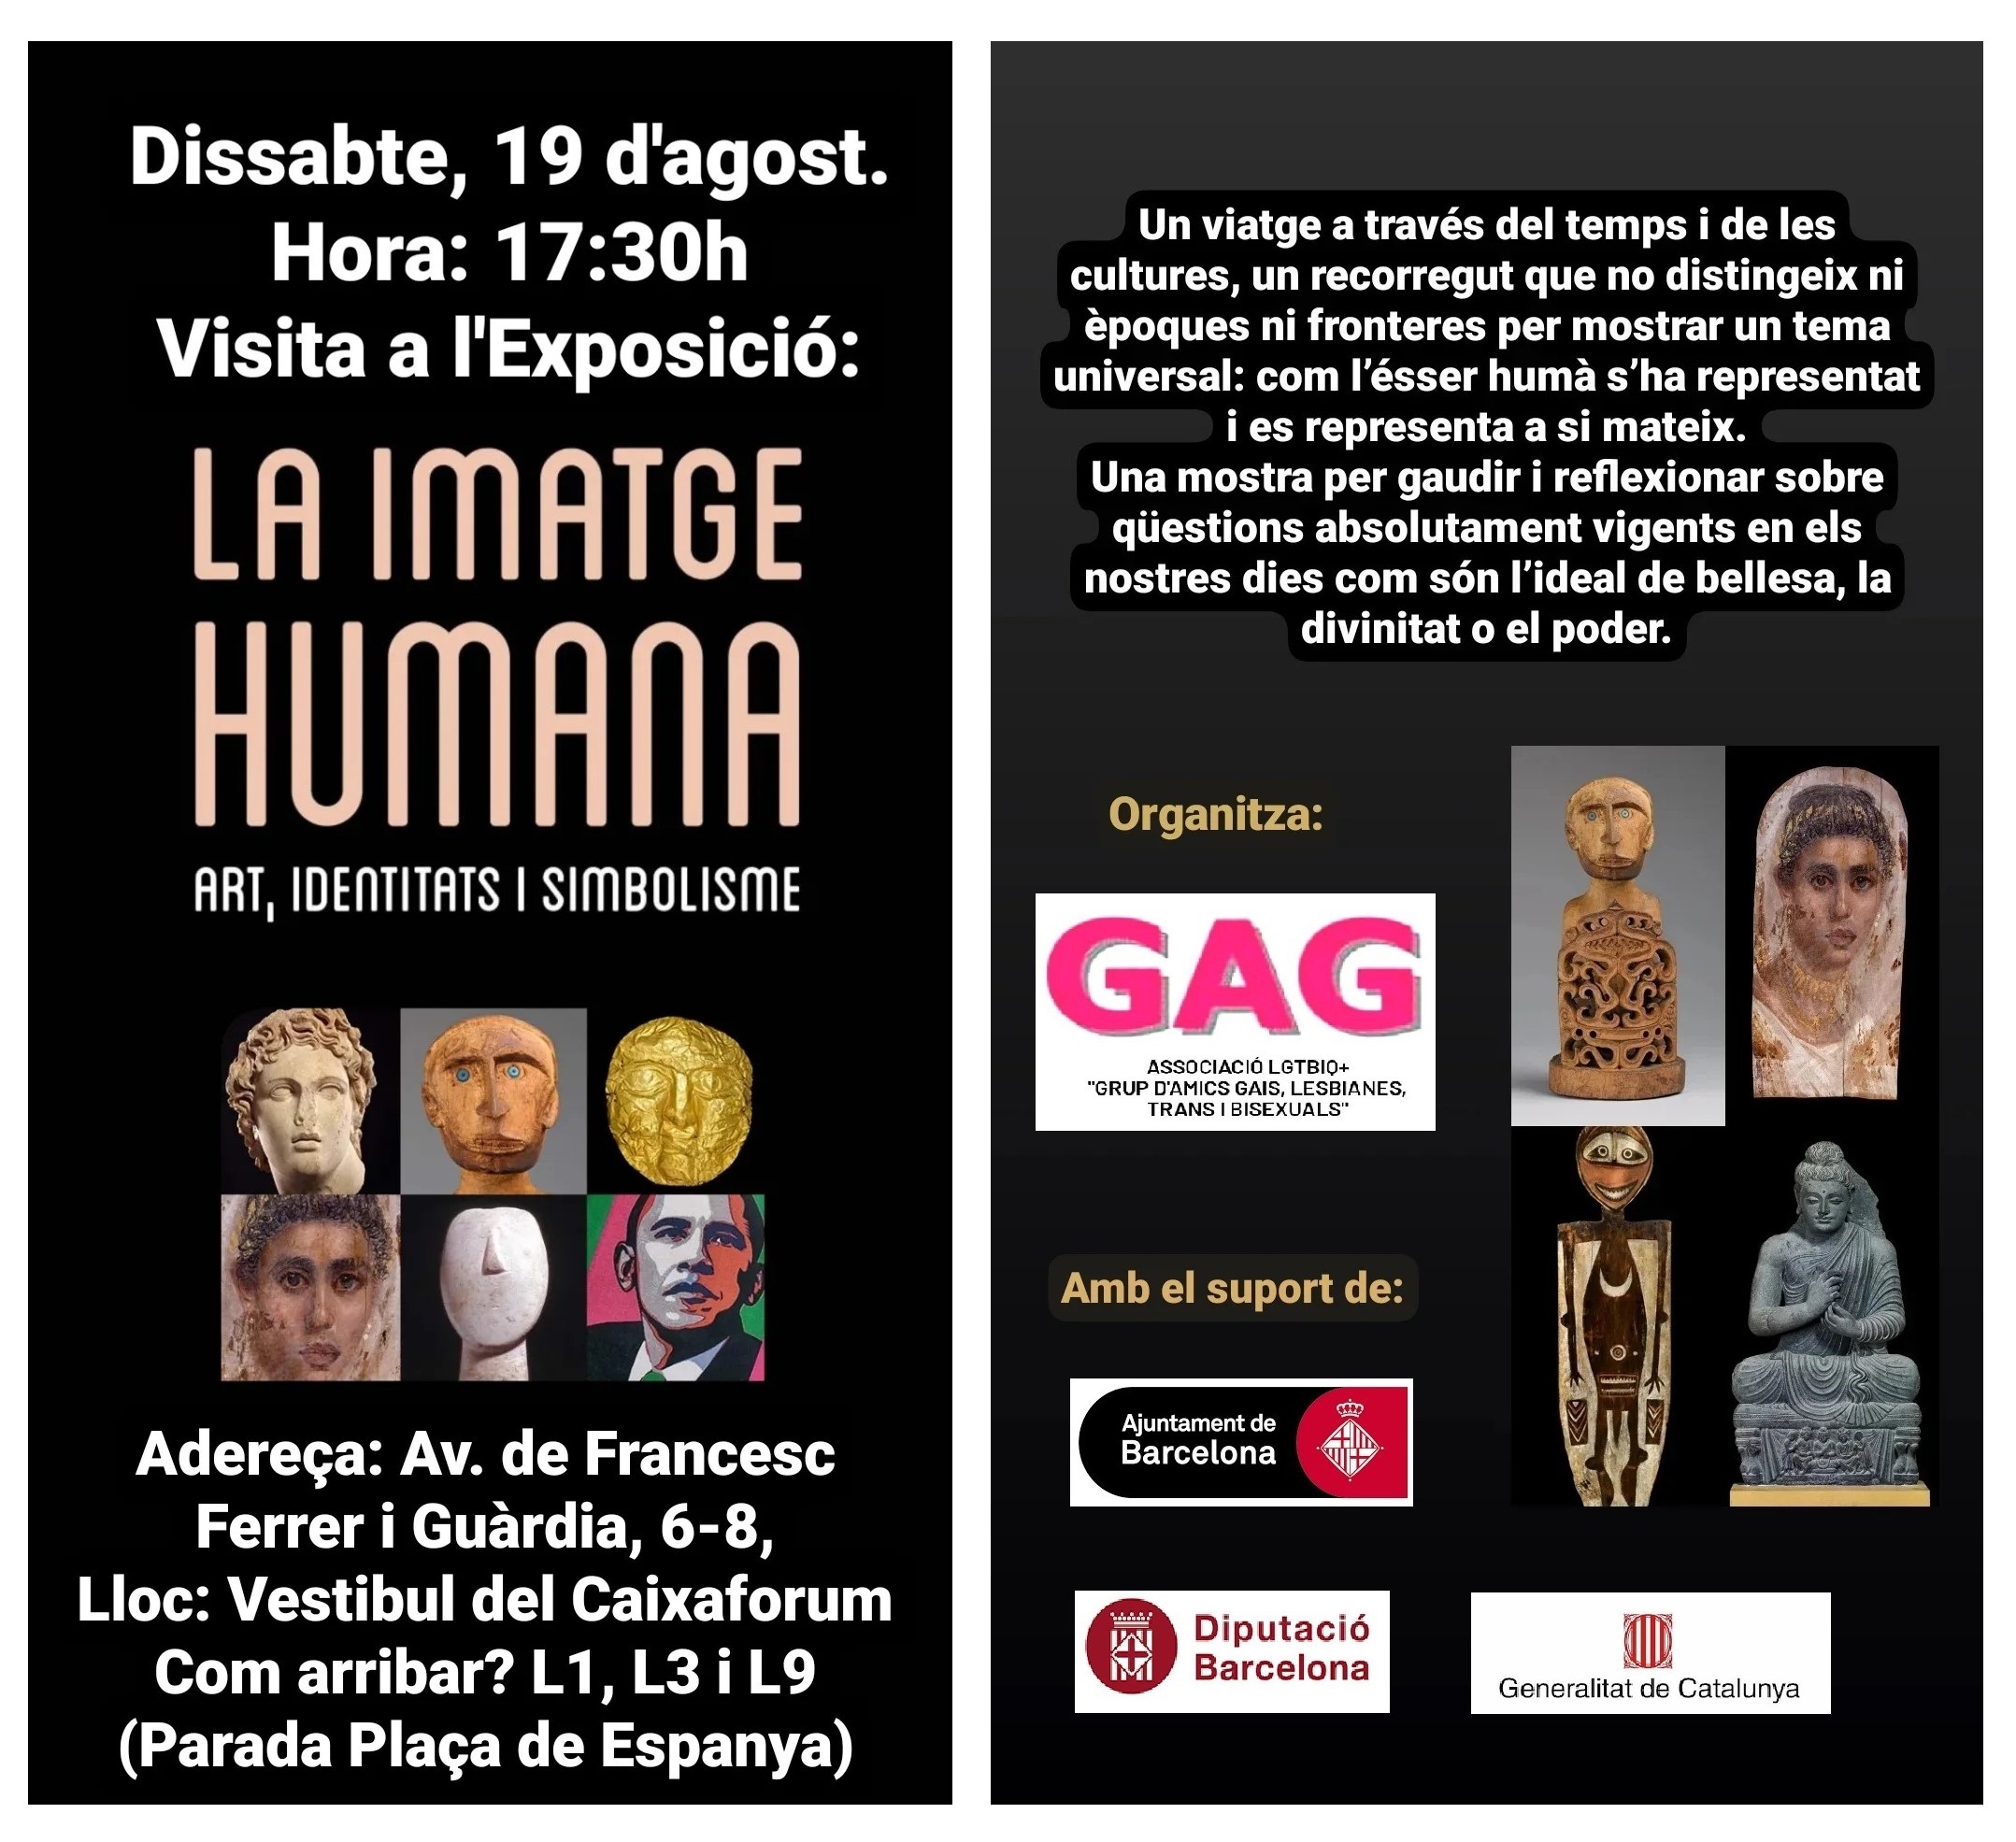 Dissabte, 19 d’agost. Visita a l’Exposició “La imatge humana”